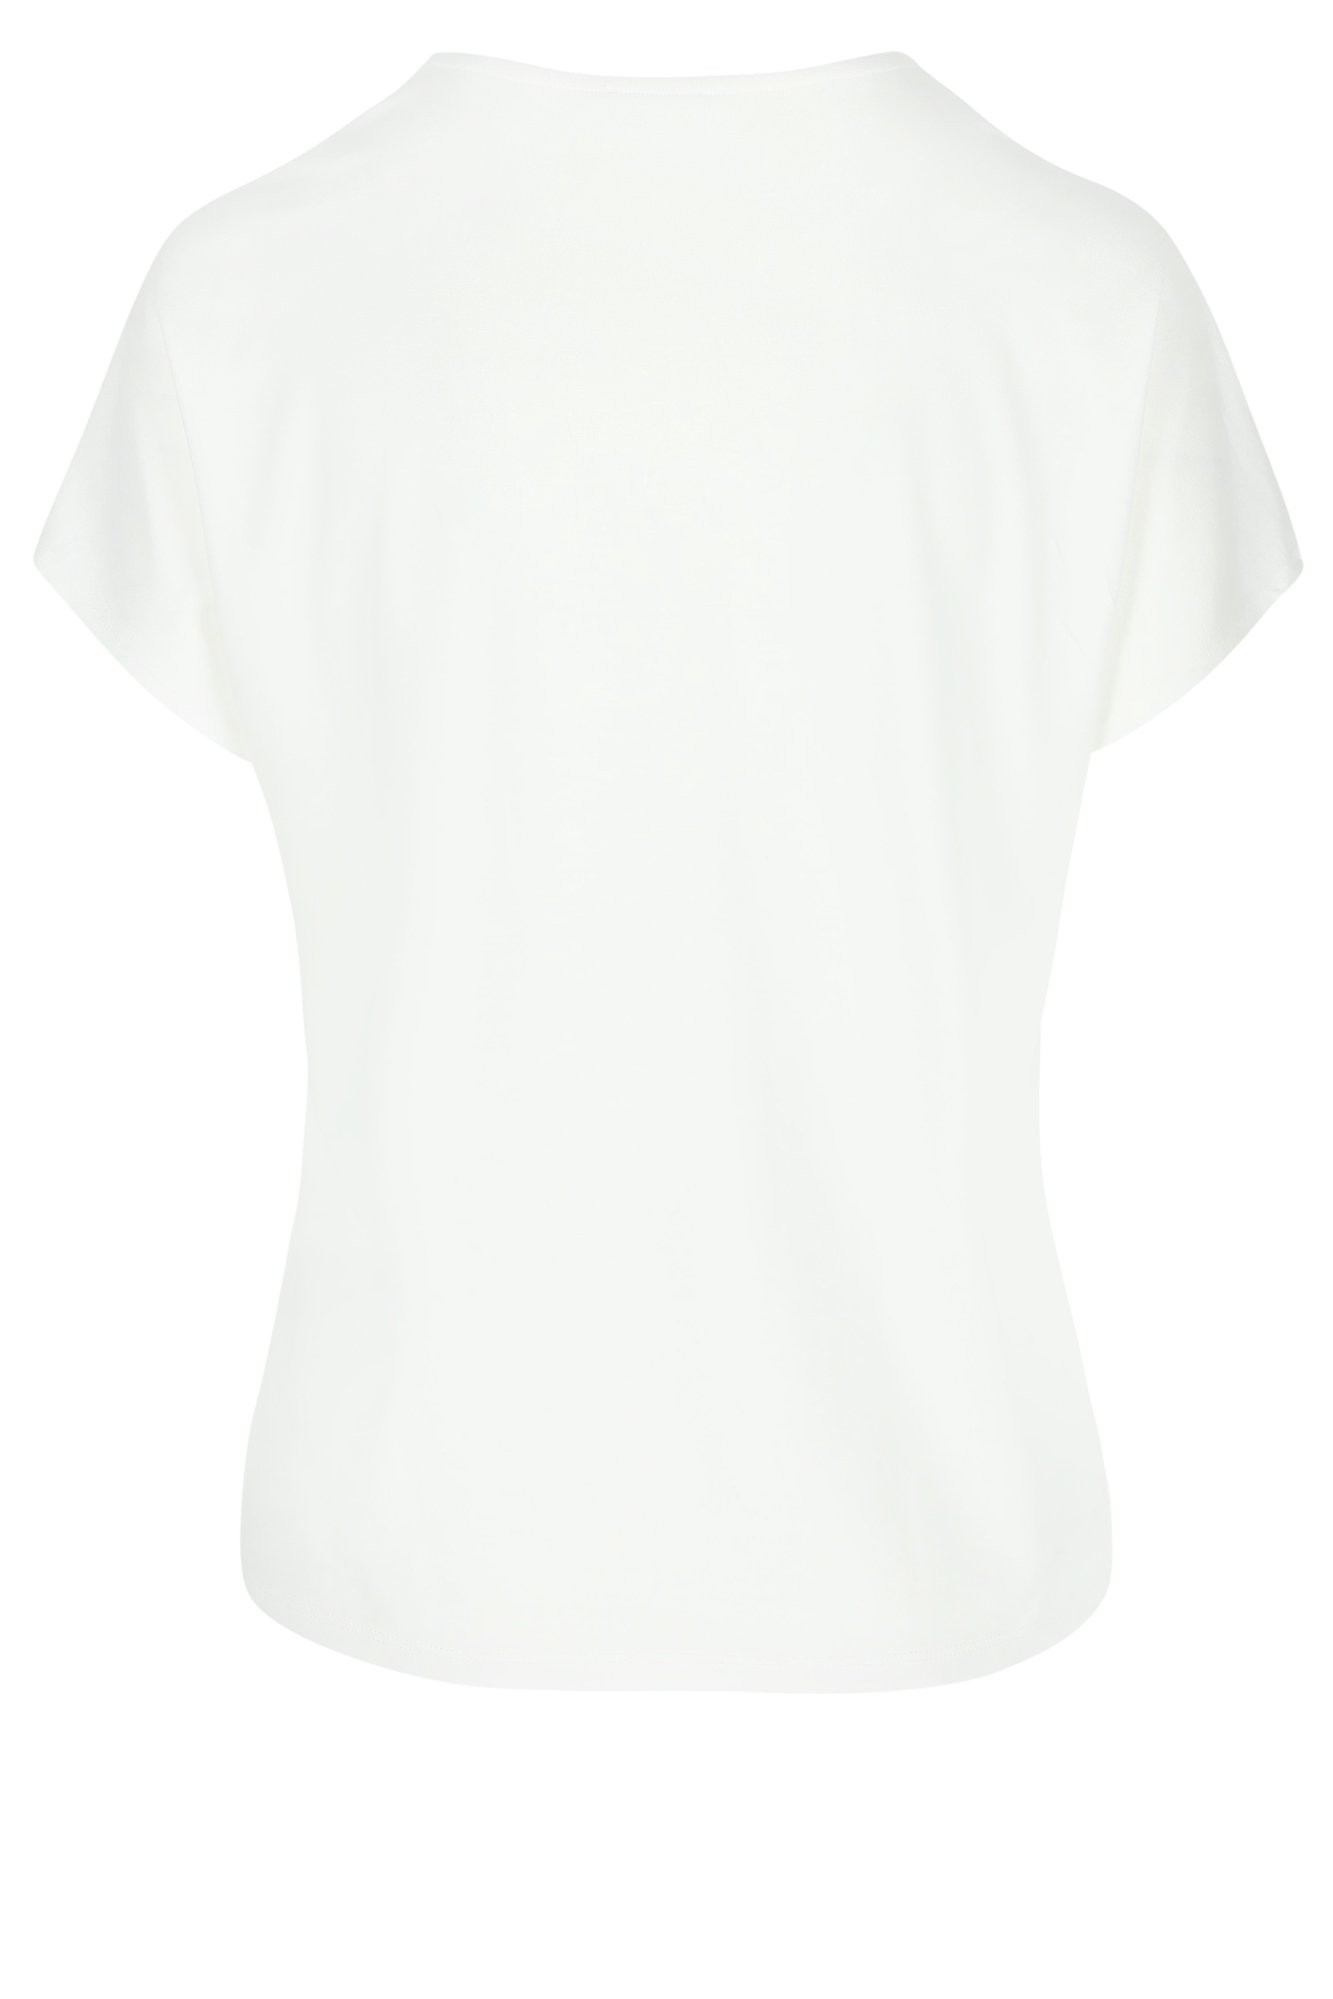 Sweatvest - Blouse T-shirt avec dos en jersey